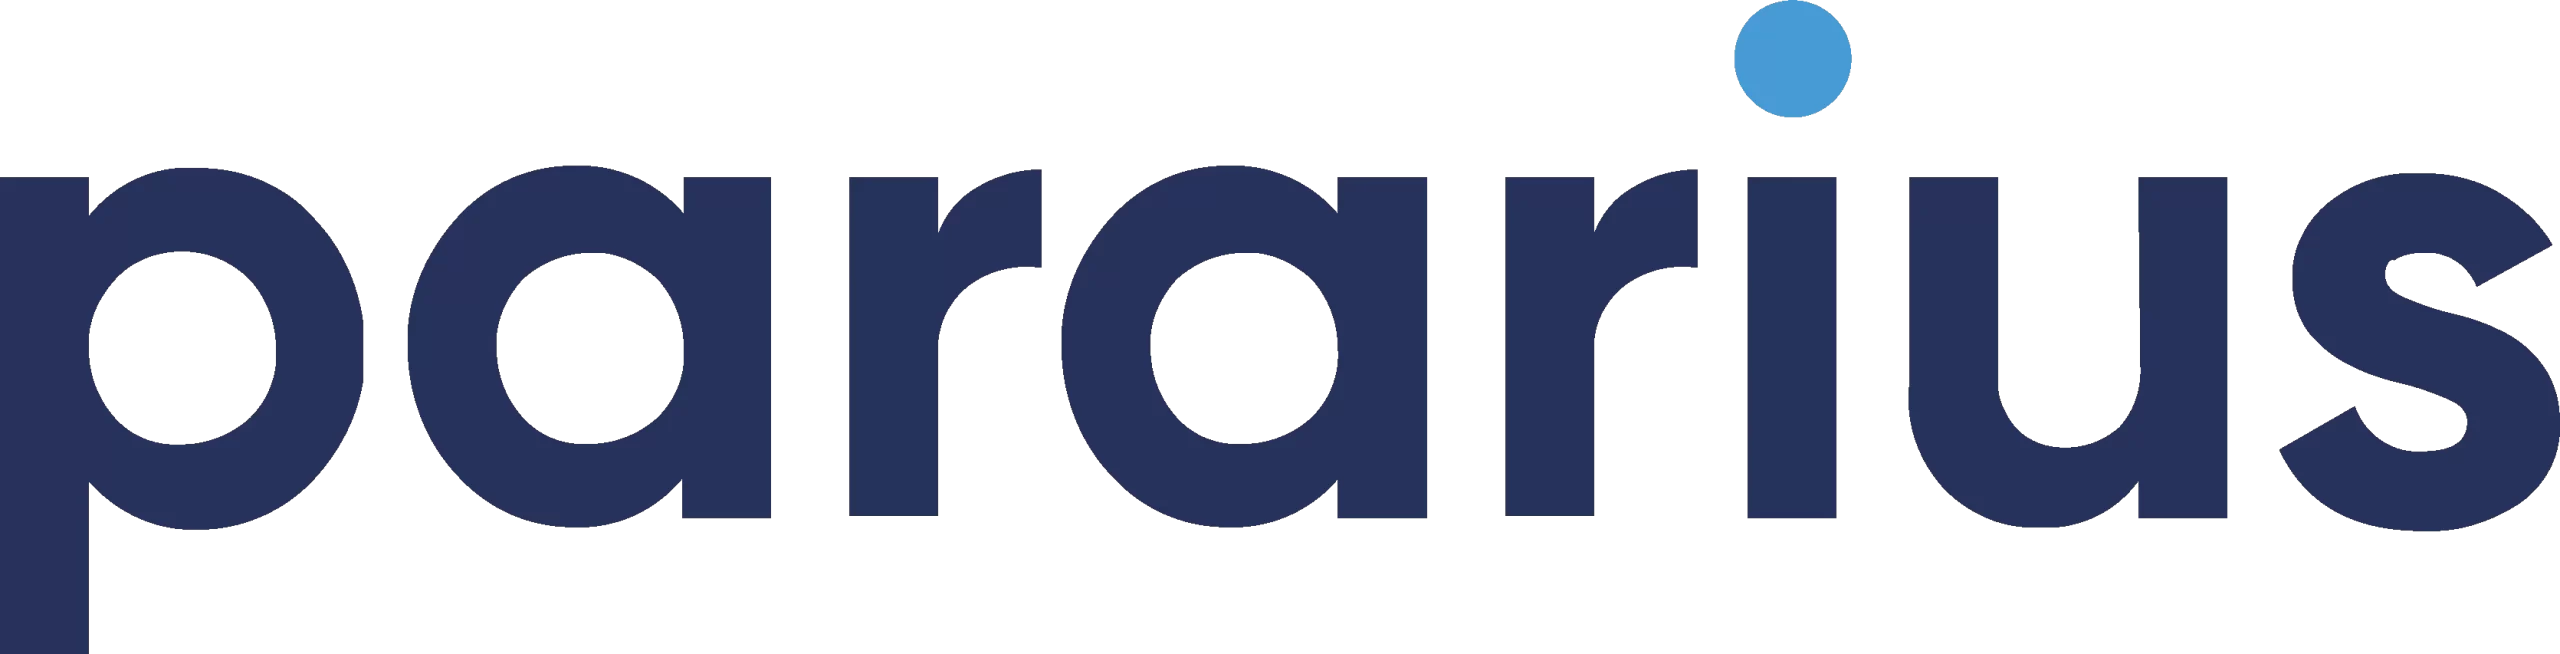 Pararius makelaar logo